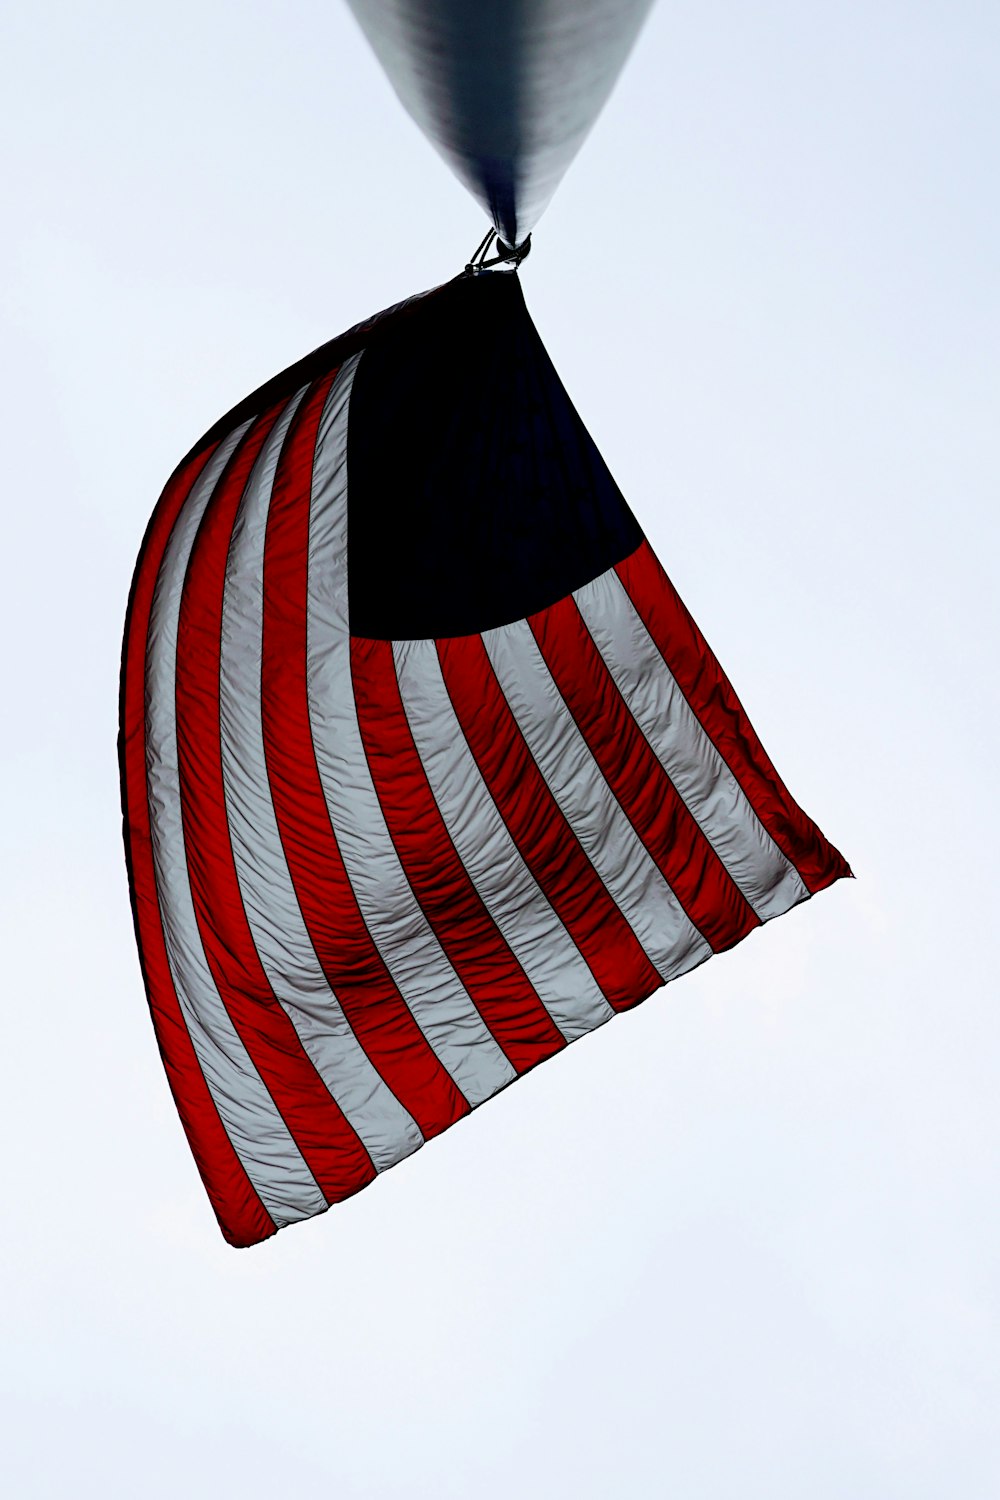 日中の黒い金属製の支柱にアメリカ合衆国の国旗